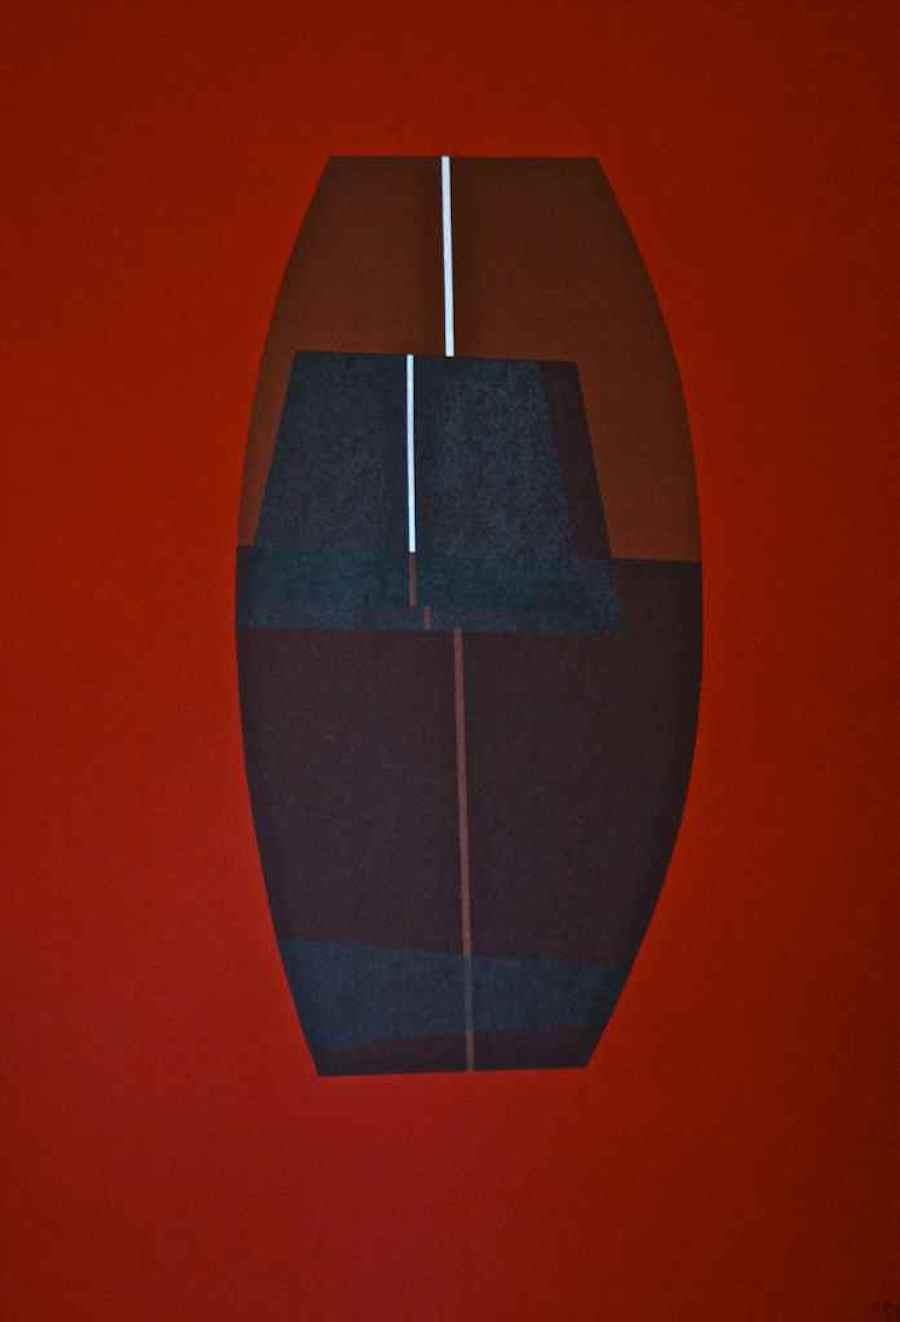 Red Six III est une belle lithographie abstraite réalisée par Lorenzo Indrimi dans les années 1970.

Il s'agit d'une édition signée à la main de 90 tirages.

L'objet bleu abstrait au centre de la composition semble brillant et se détache du fond